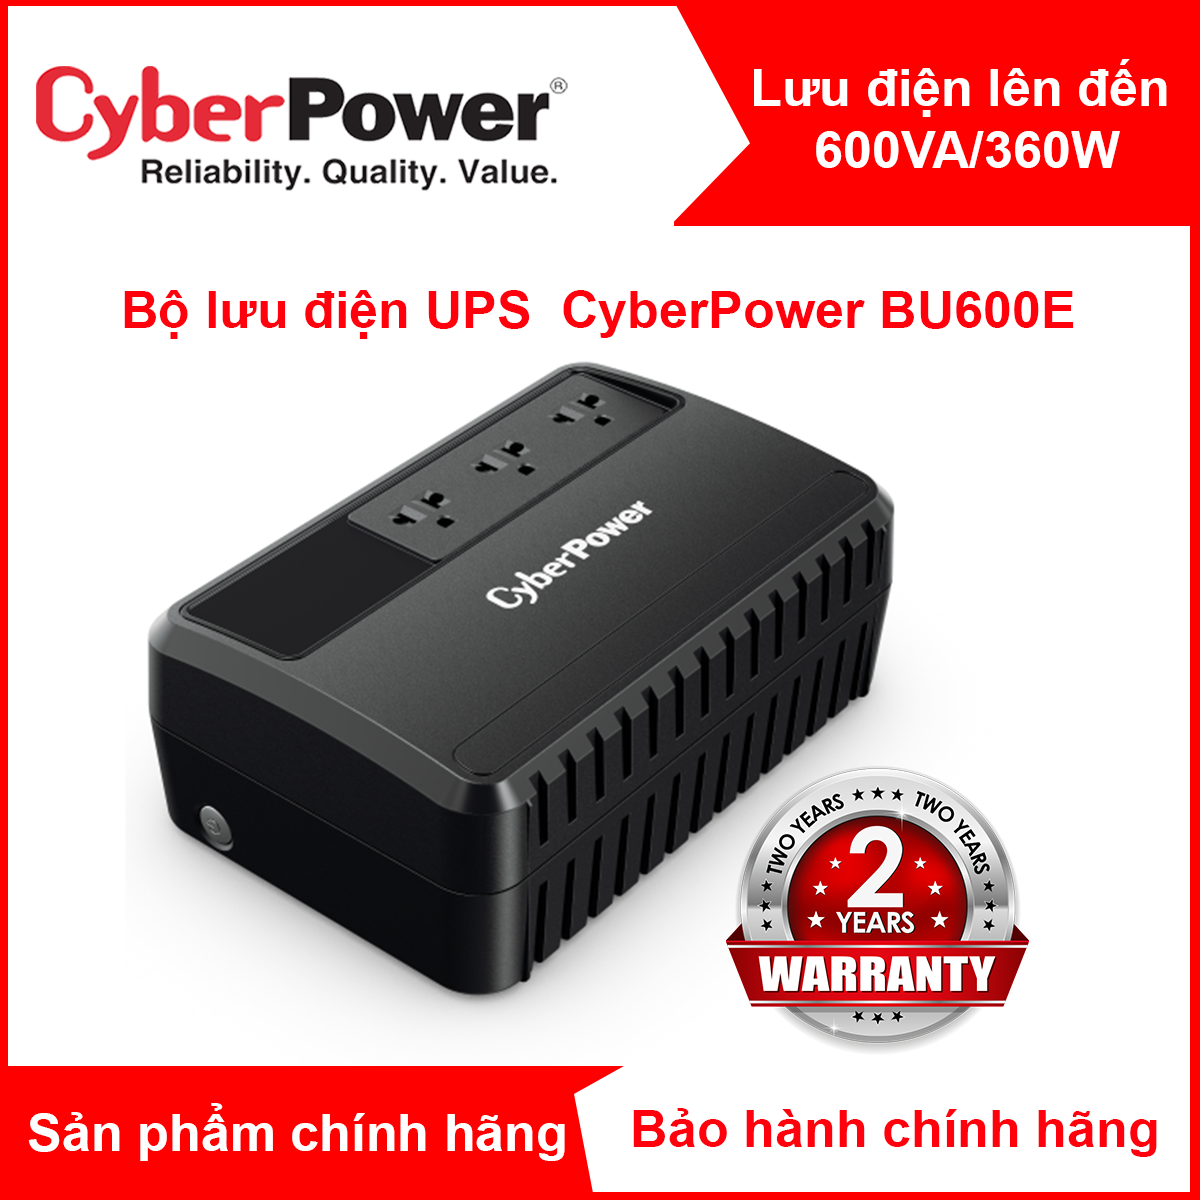 Bộ lưu điện UPS CyberPower BU600E - 600VA / 360W -  Tích hợp công nghệ ổn áp AVR, Công nghệ tiết kiện điện GreenPower, công nghệ Line Interactive - Hàng chính hãng